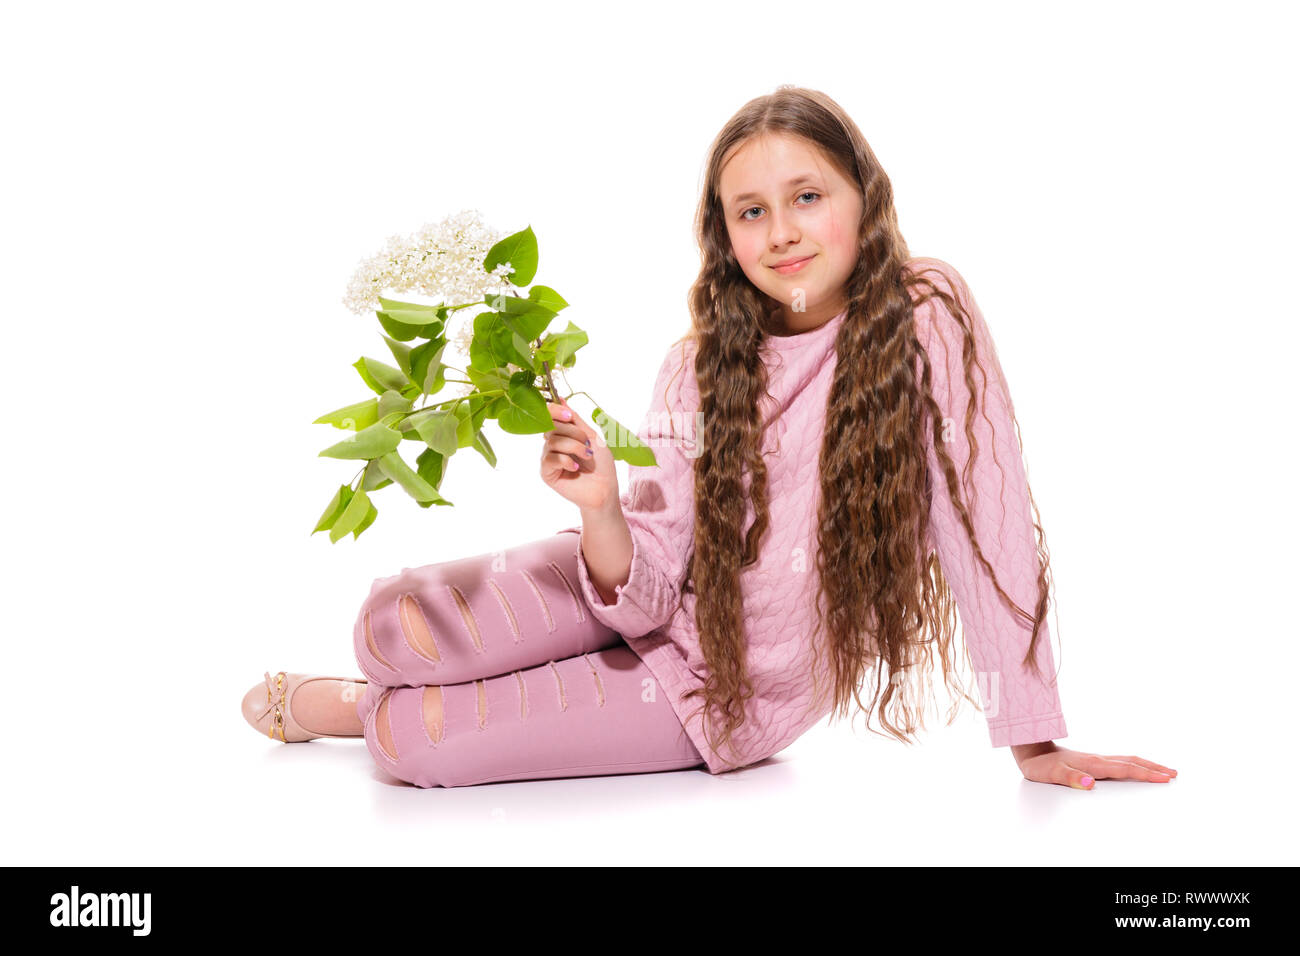 Ragazza sorridente 10-11 anni in un abito rosa azienda lilla bianco nelle sue mani. Isolamento su sfondo bianco Foto Stock